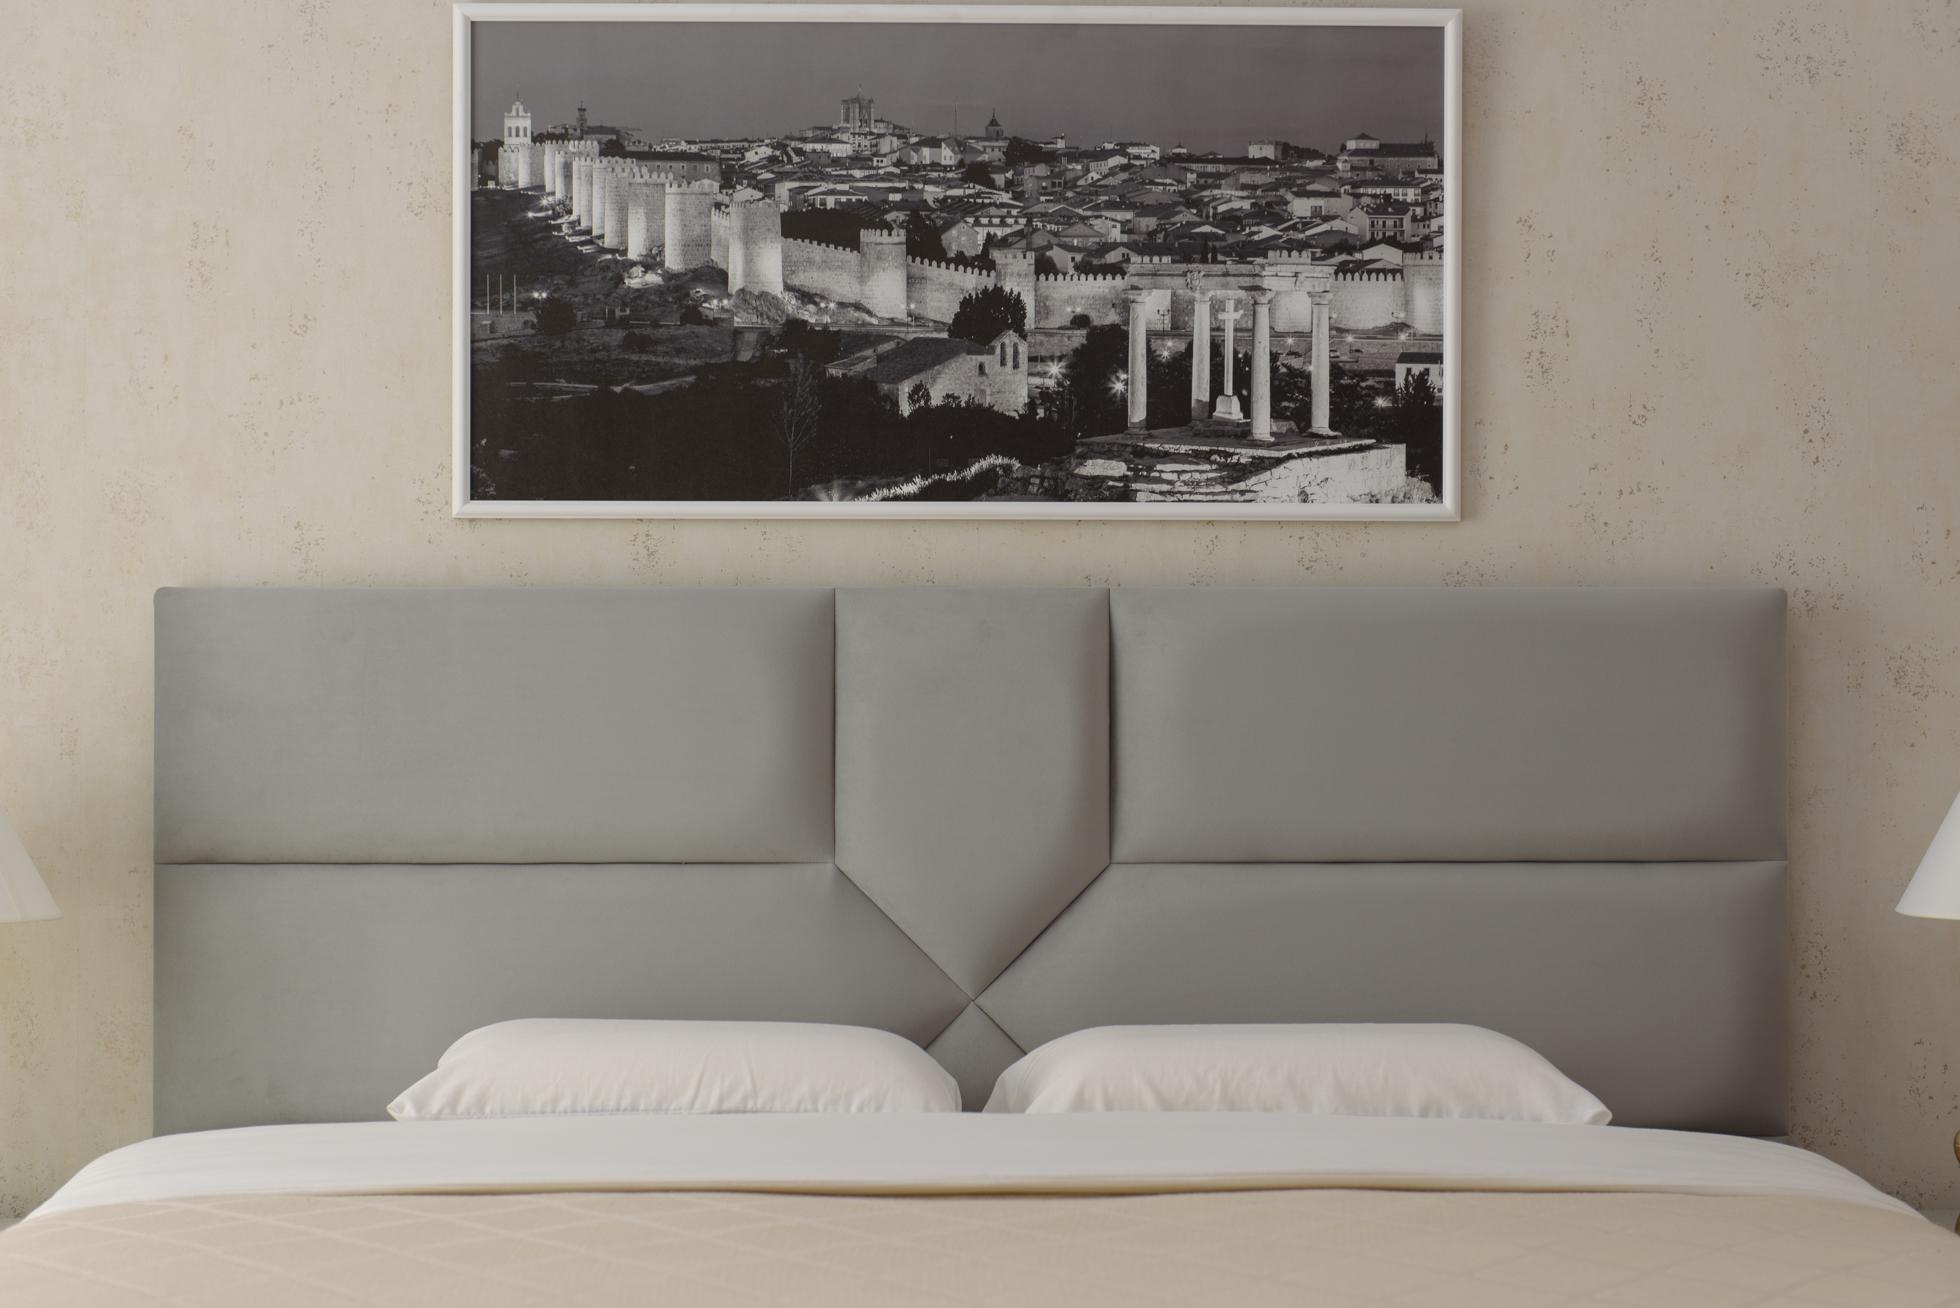 Купить Кровать Авила от производителя “Архитектория” фото №2